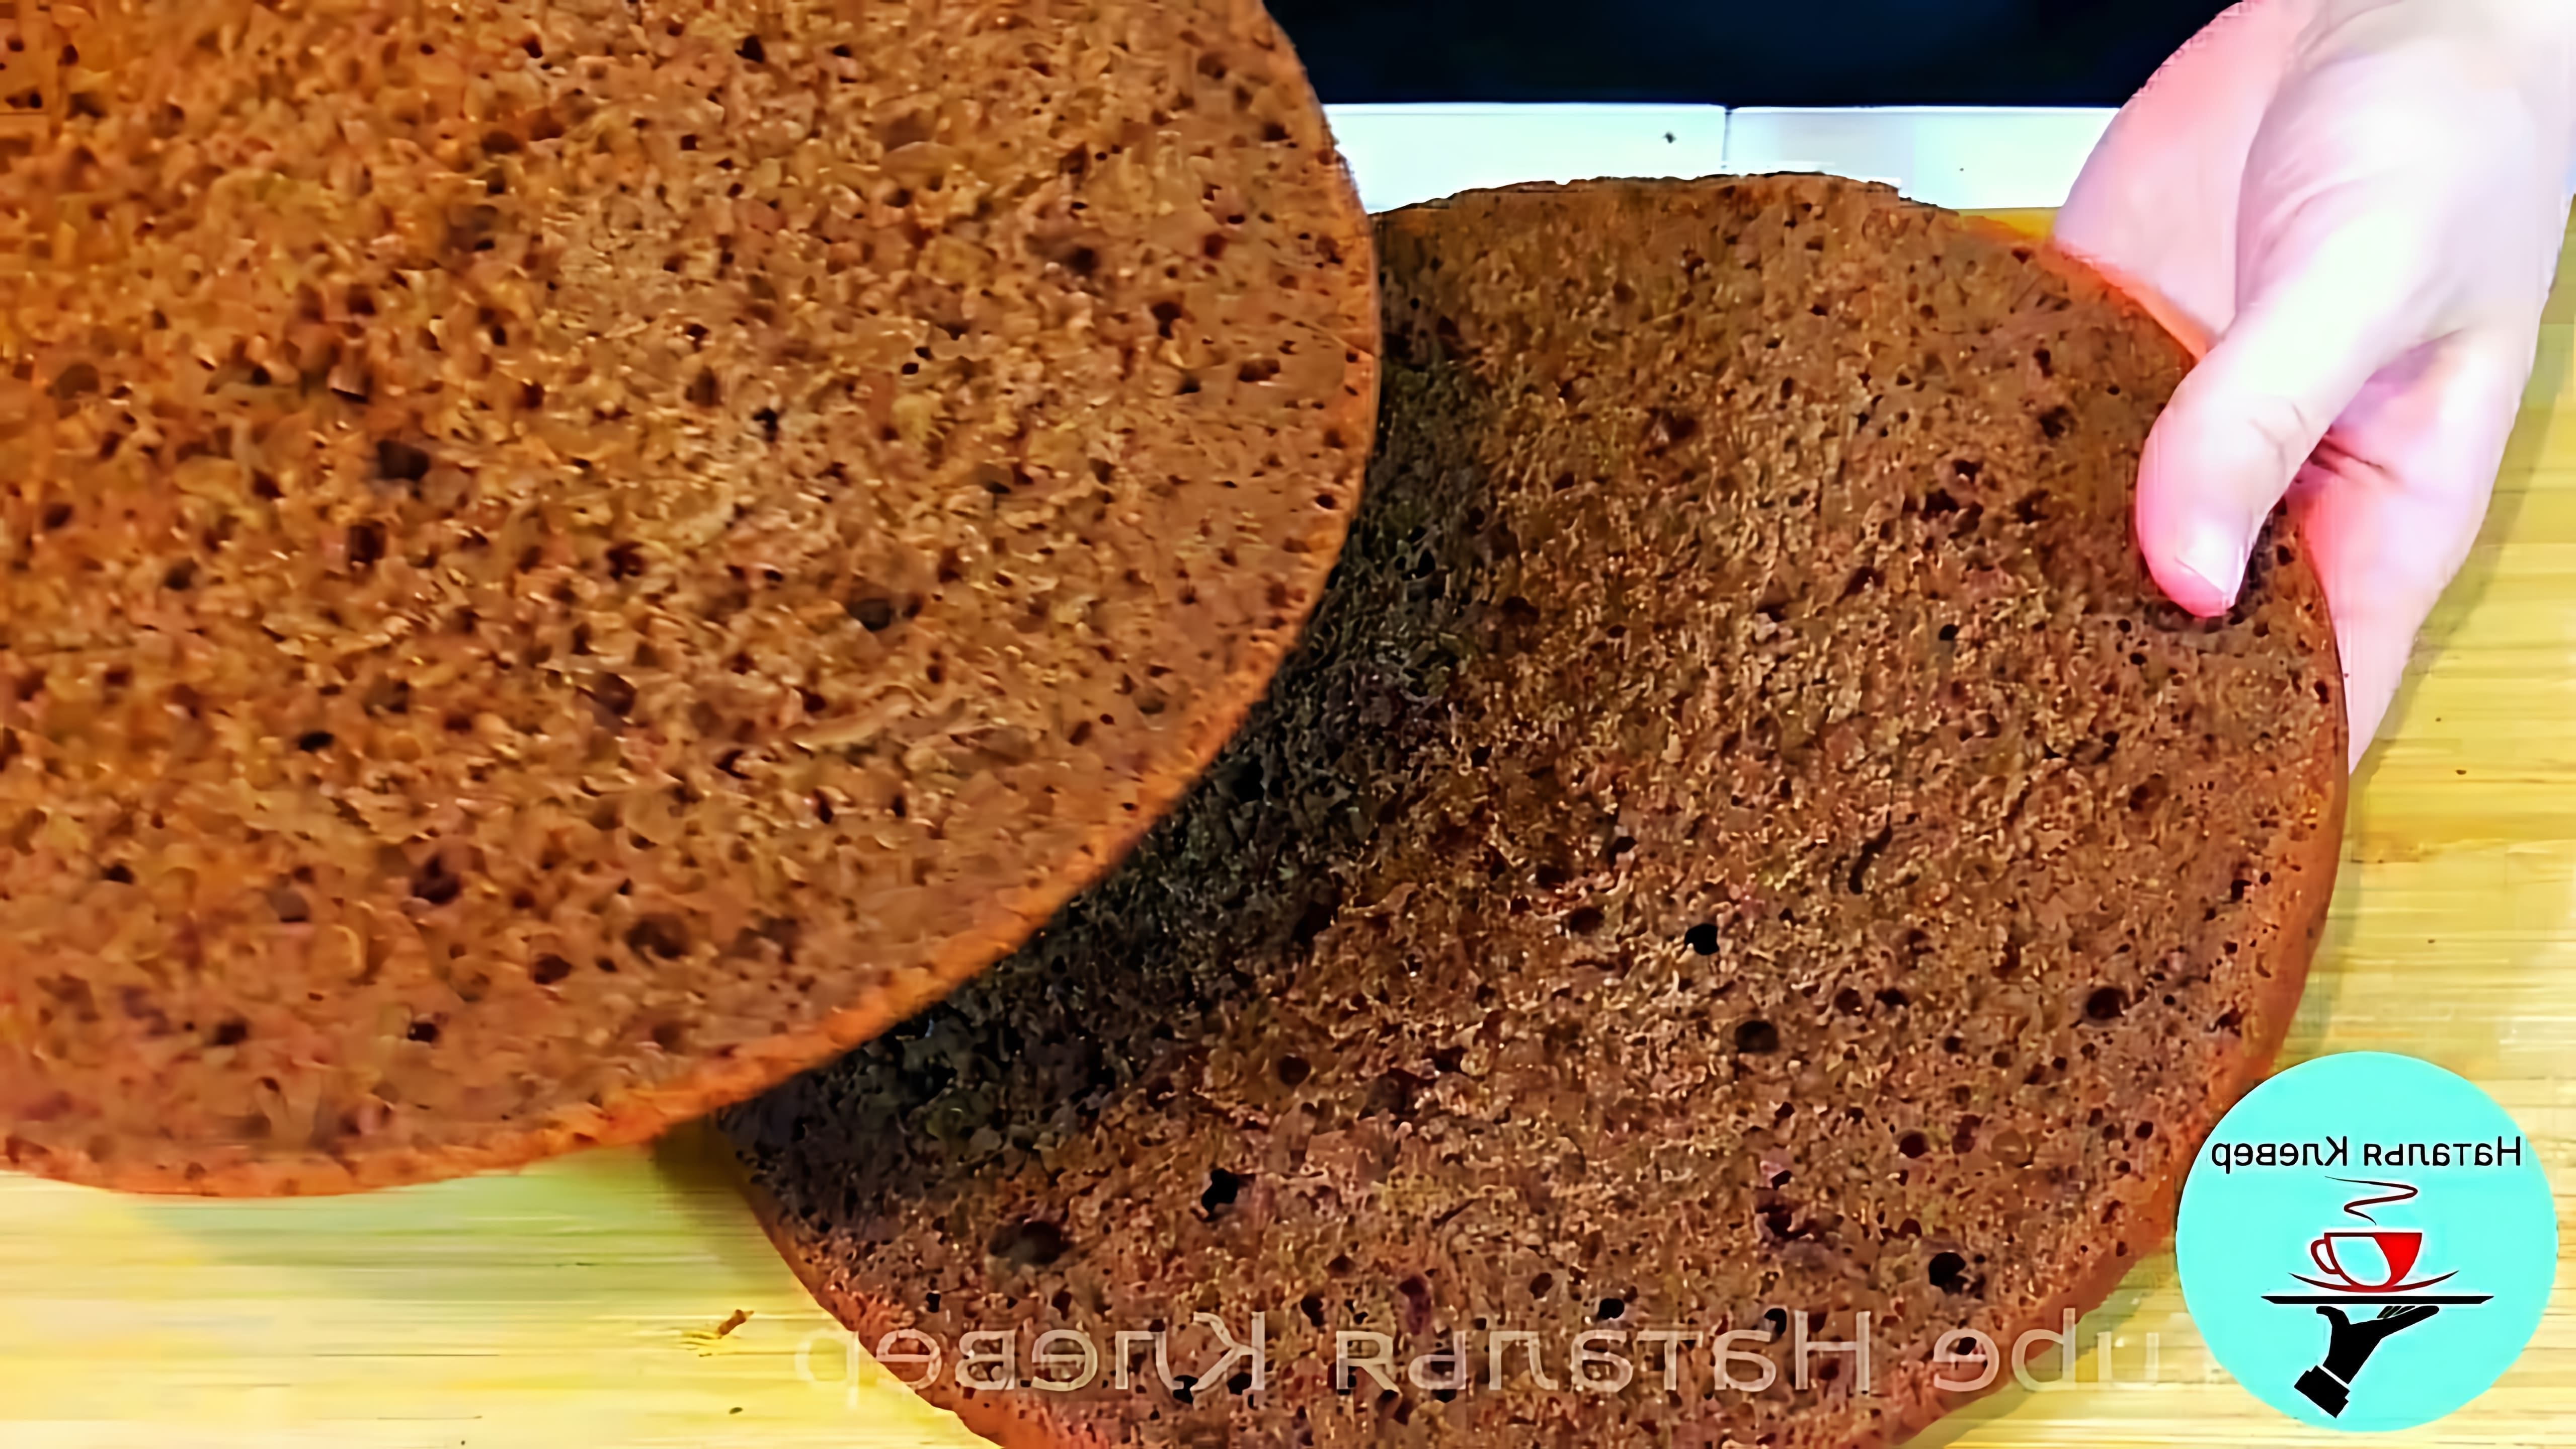 В этом видео демонстрируется рецепт приготовления бисквита без использования духовки